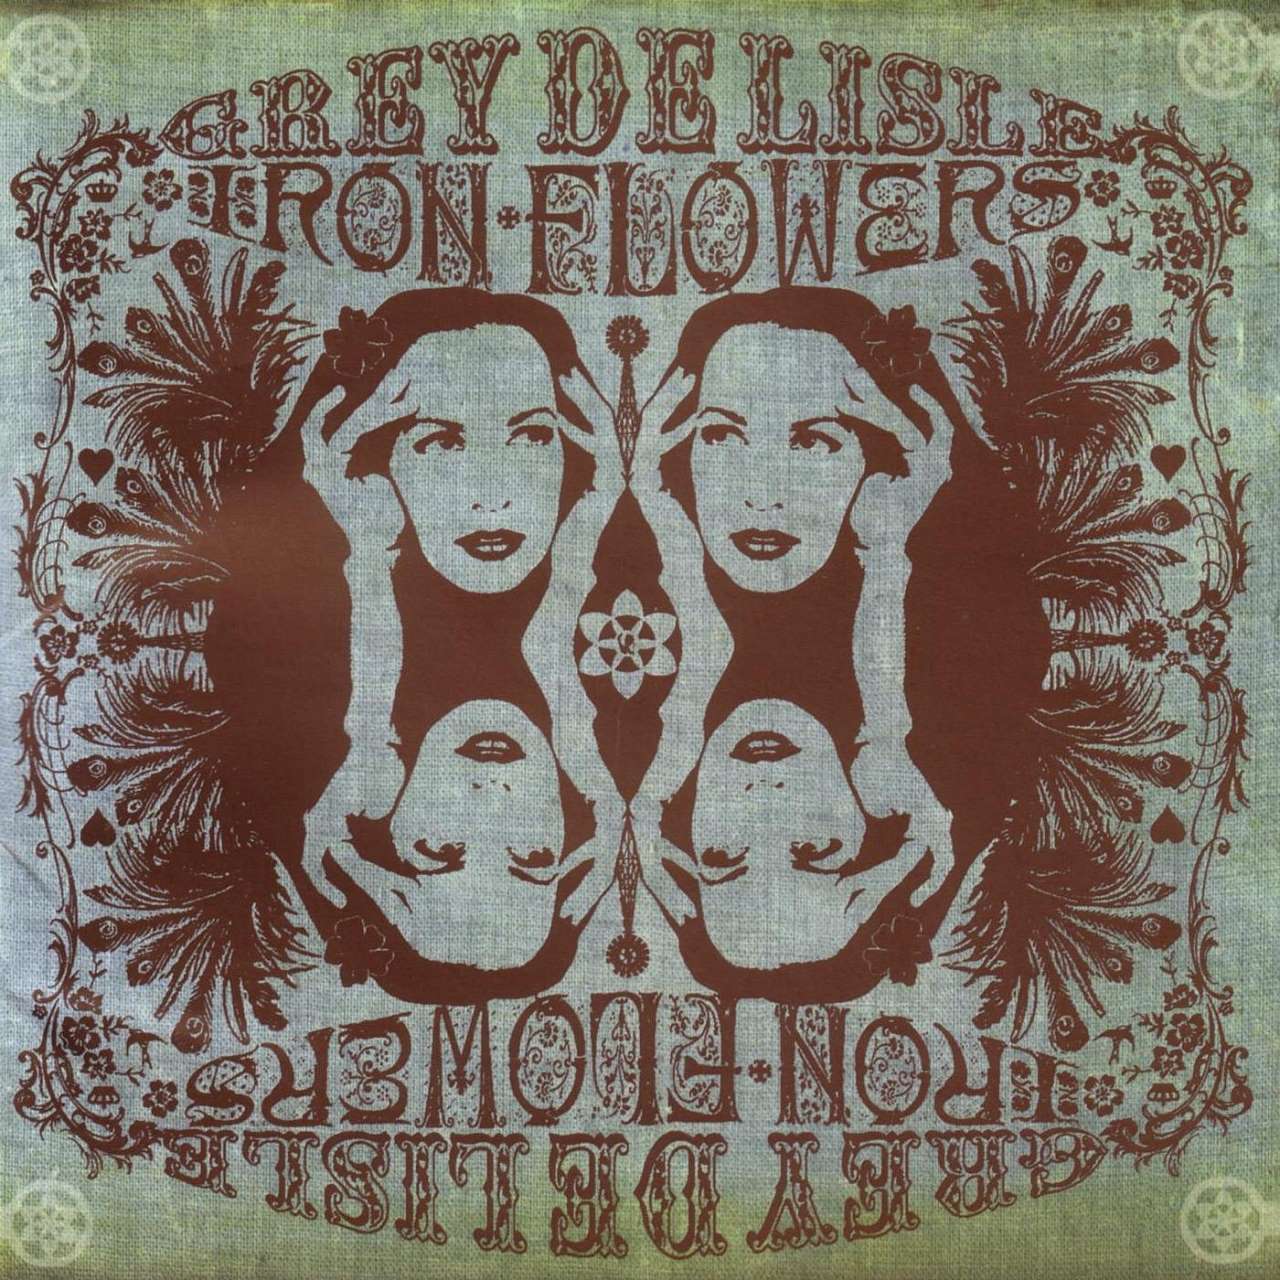 Grey DeLisle - Iron Flowers cover album